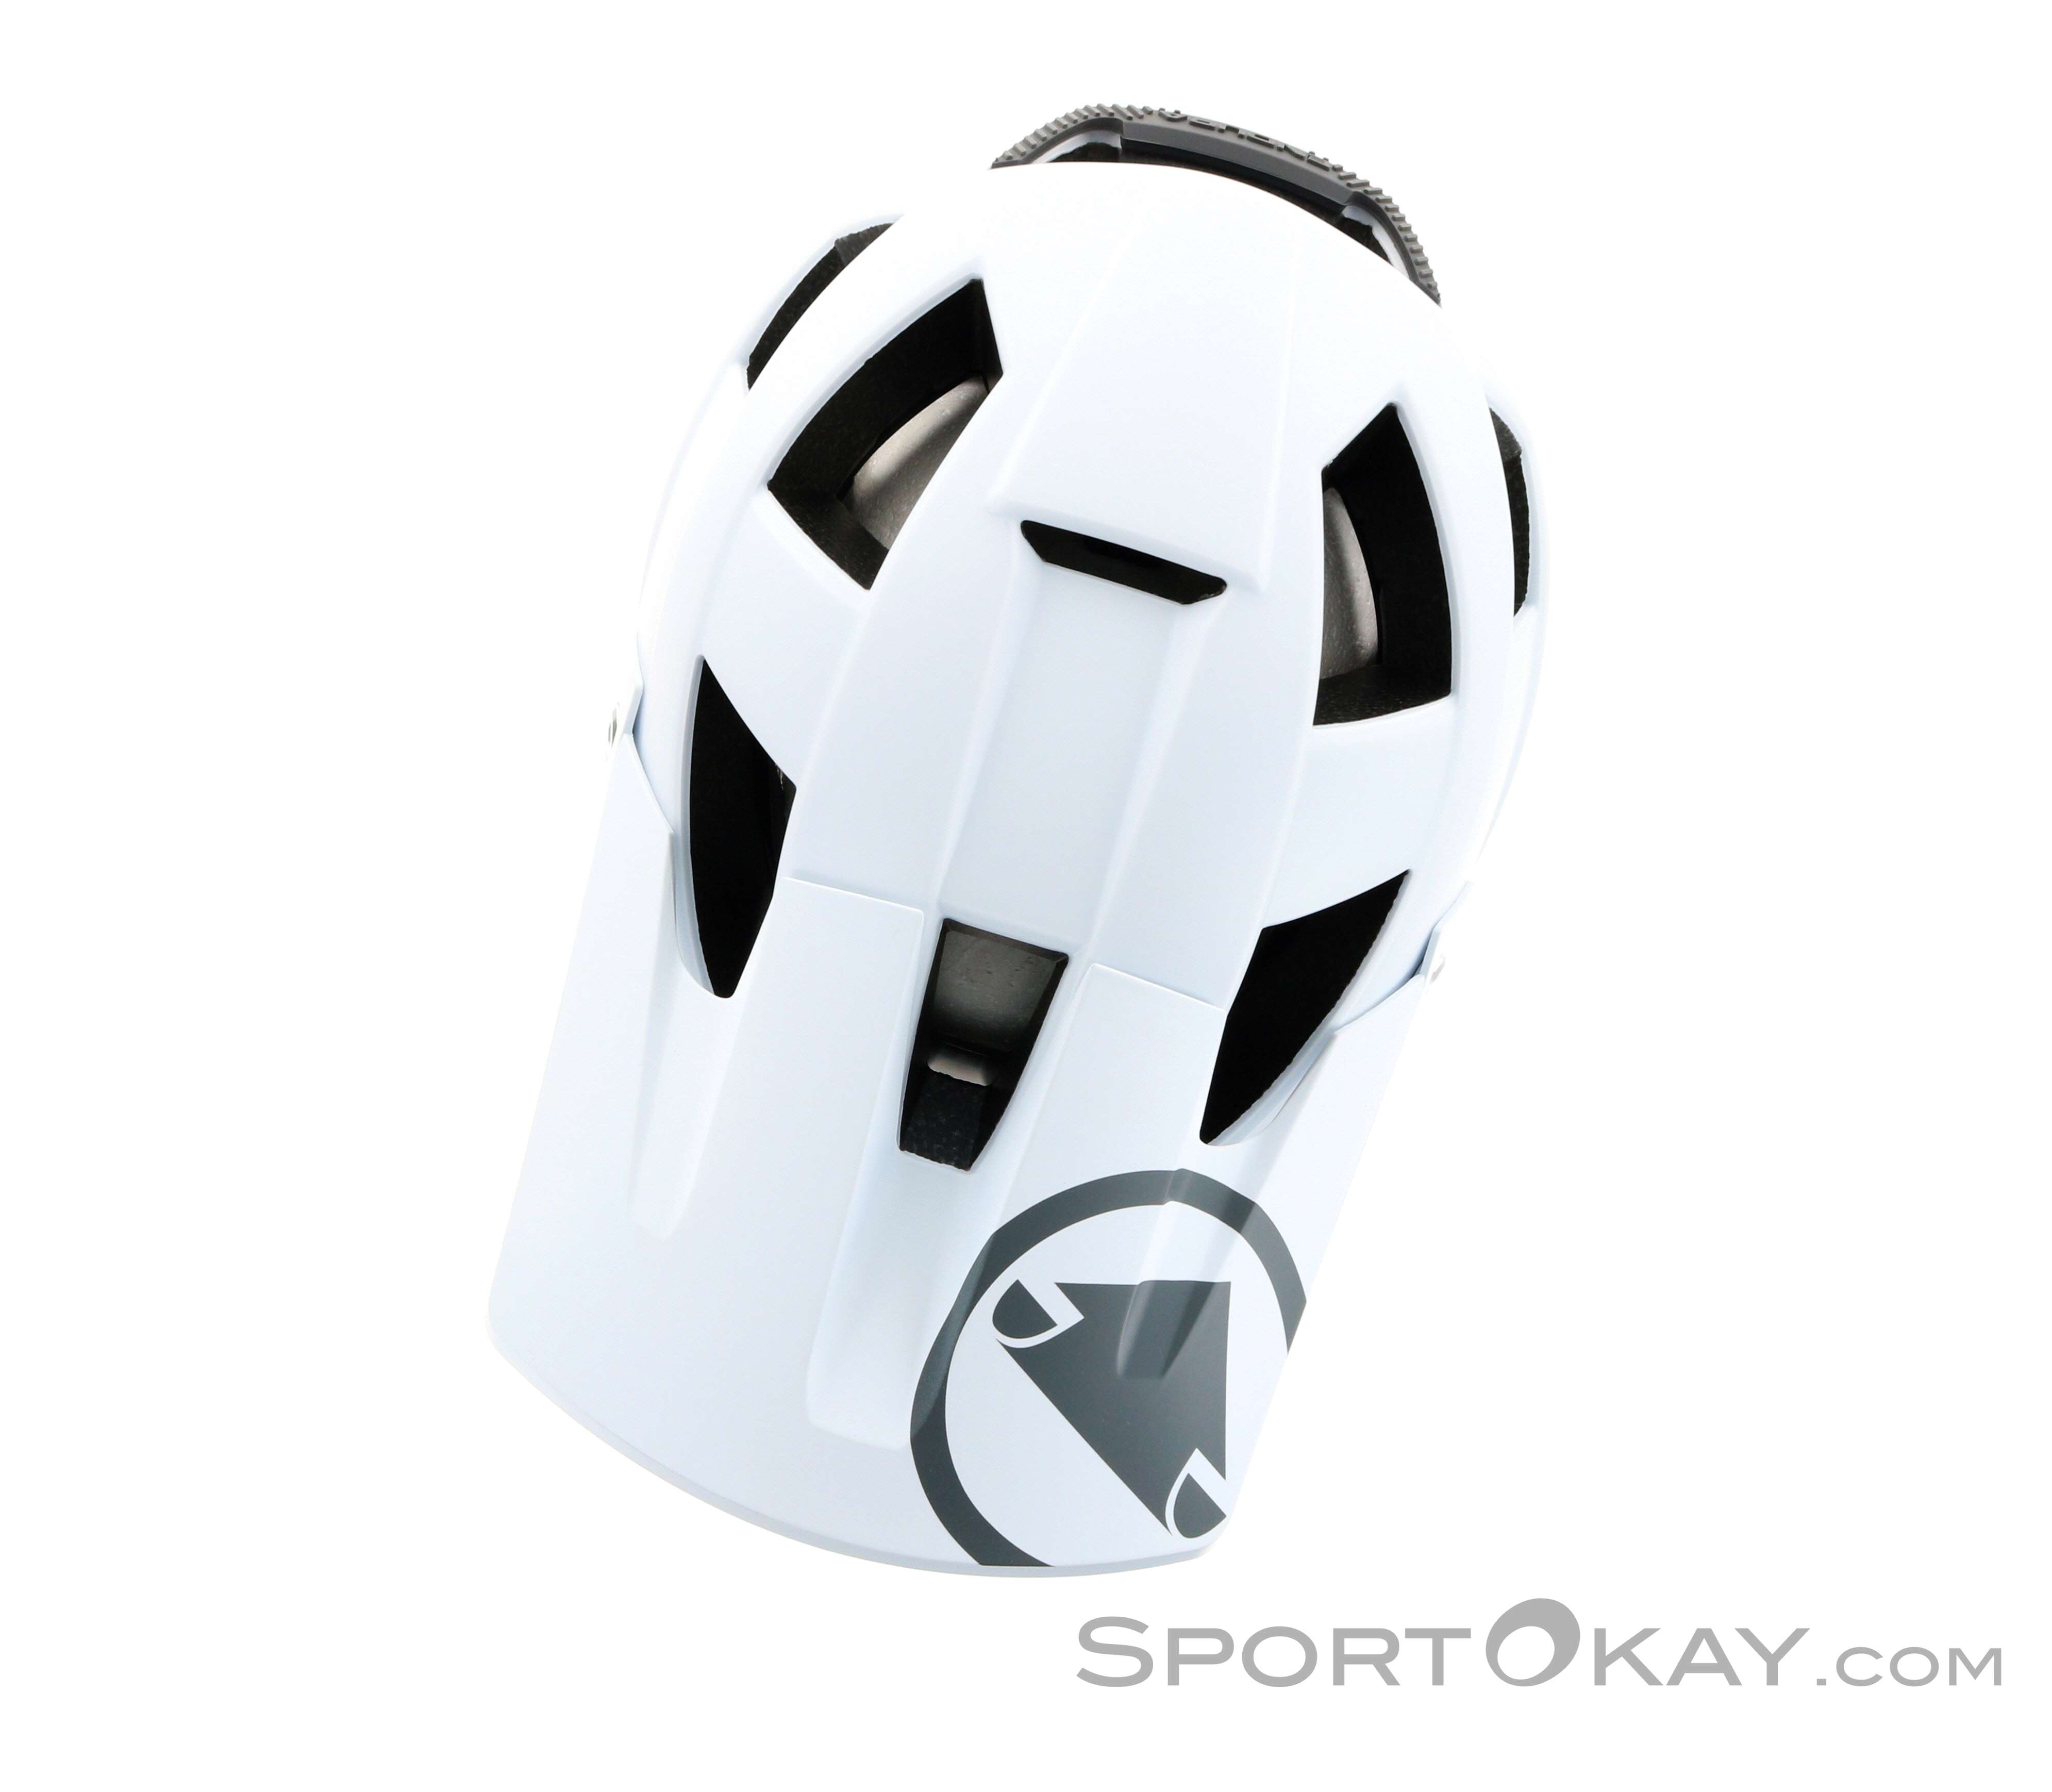 ENDURA Singletrack Helmet casco MTB uomo - Articoli Sportivi Online